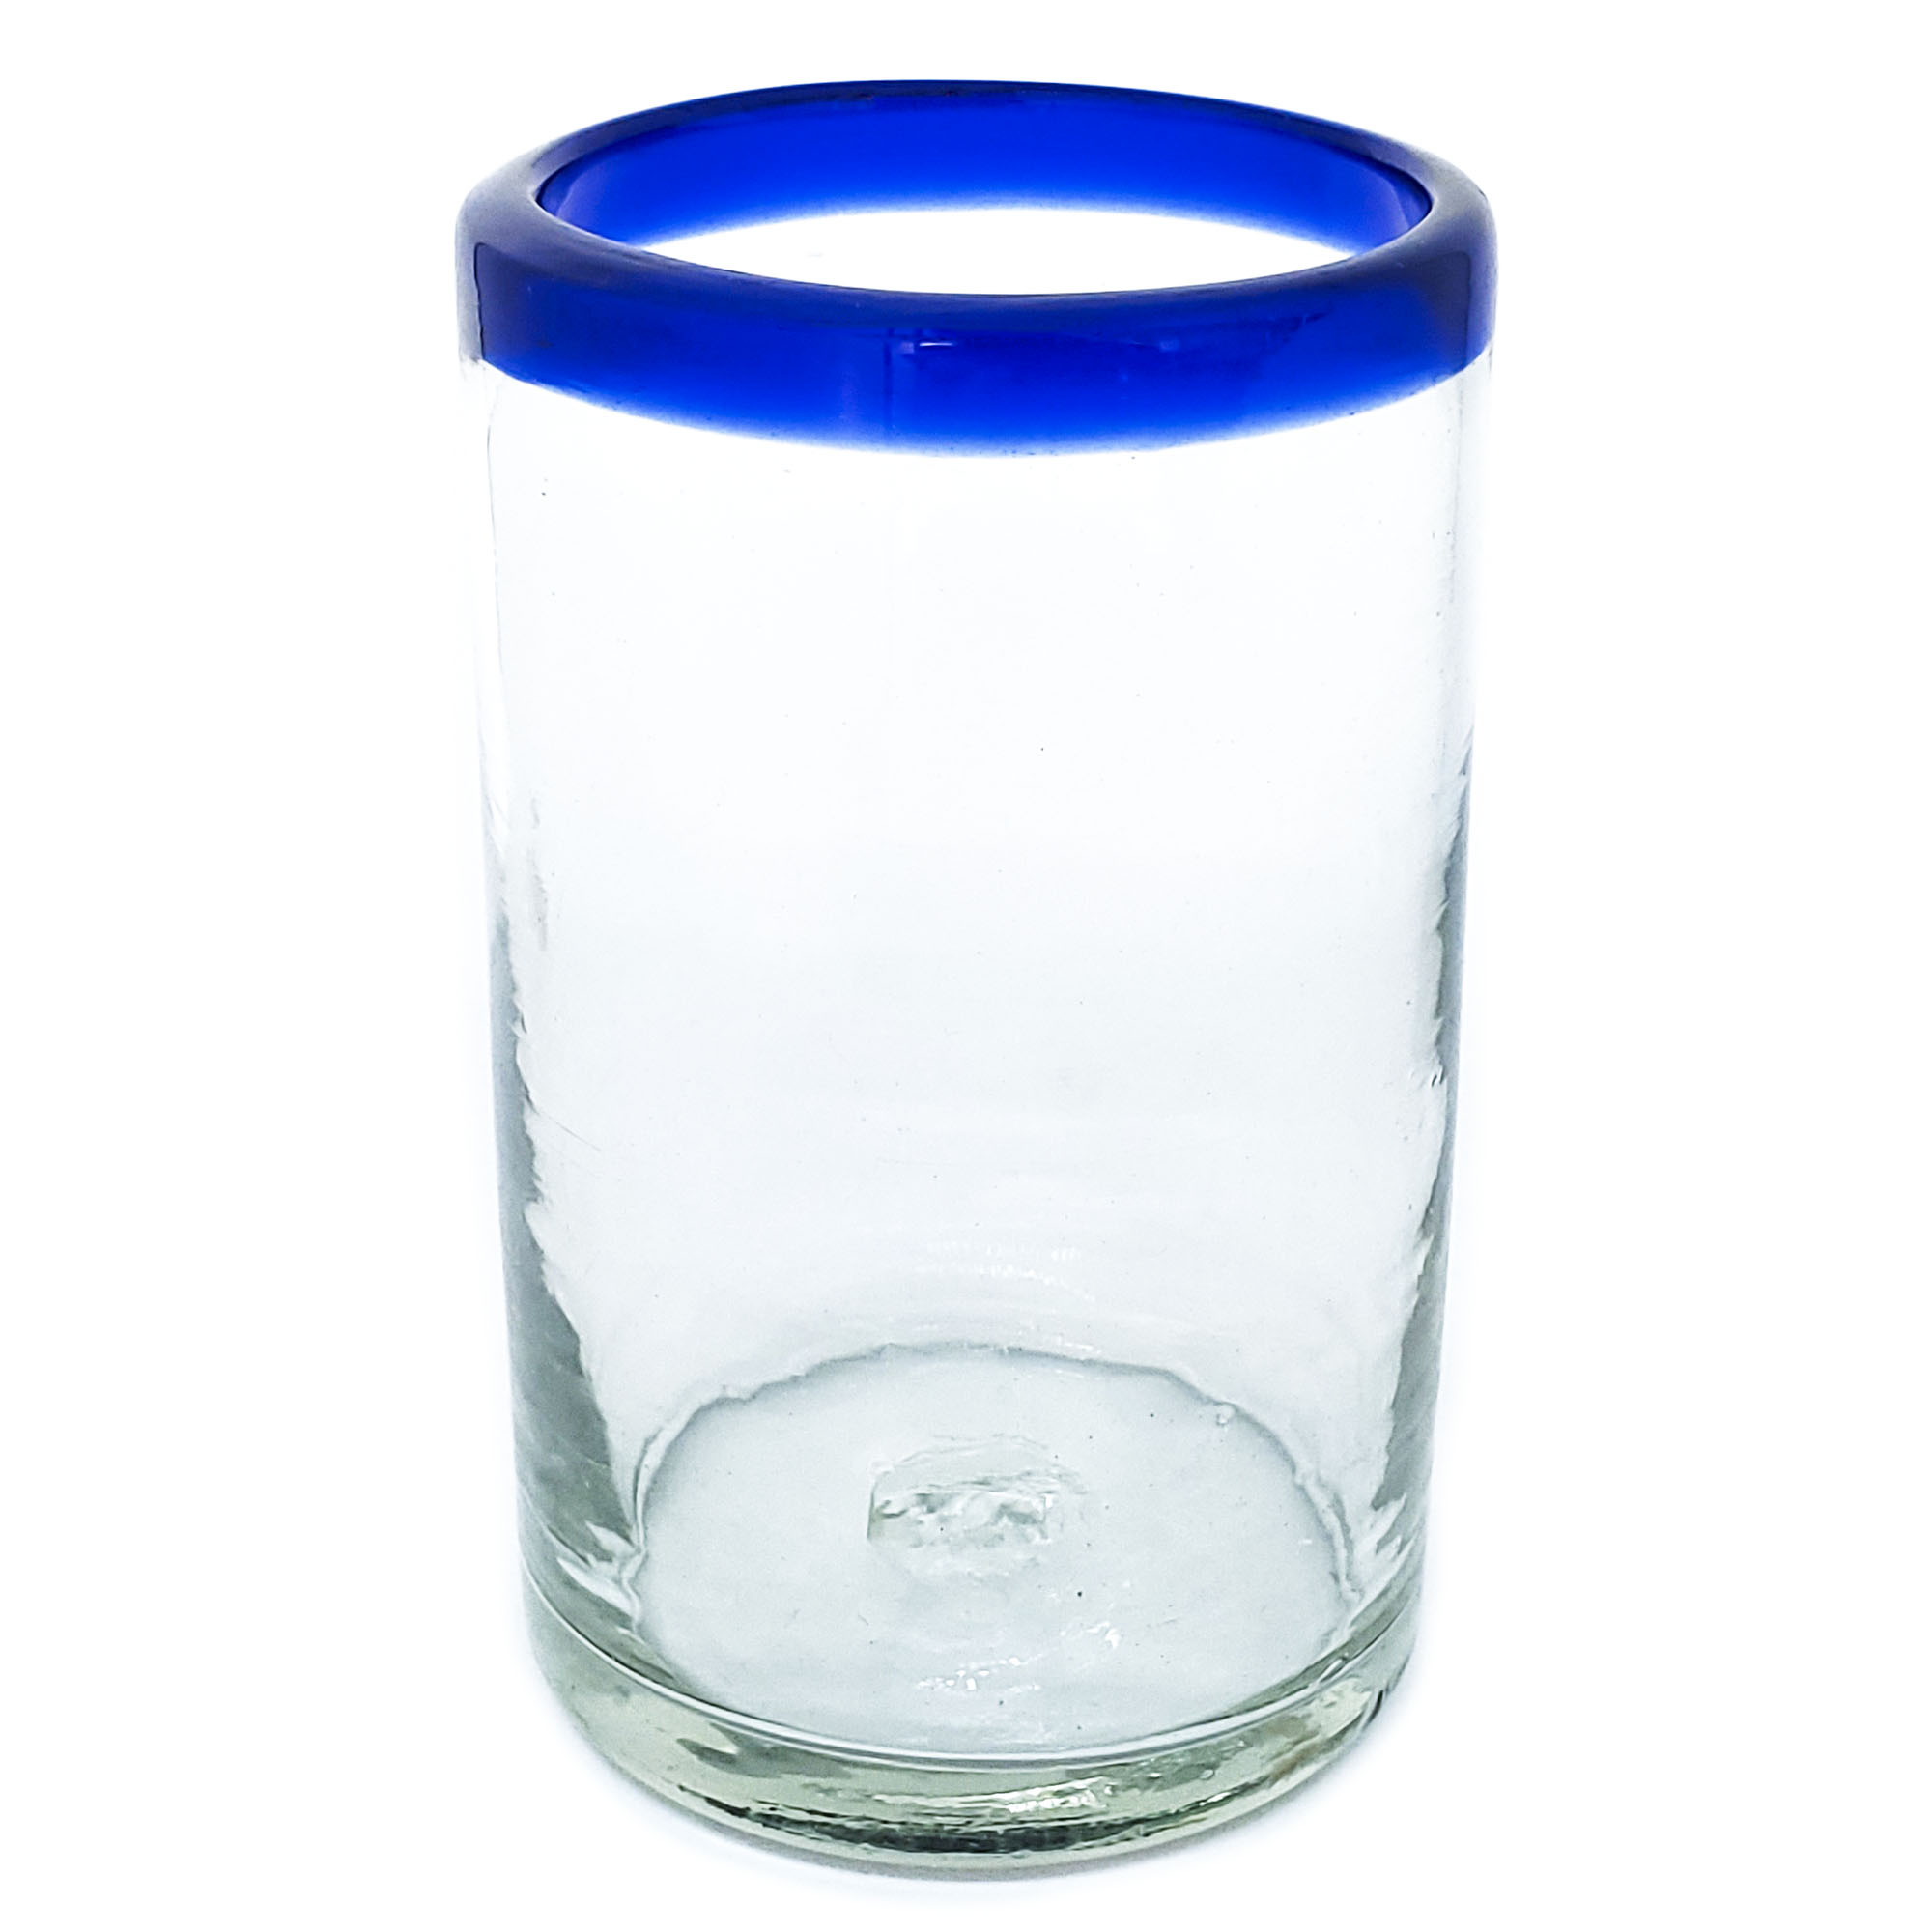 Vasos de Vidrio Soplado / Juego de 6 vasos grandes con borde azul cobalto / Éstos artesanales vasos le darán un toque clásico a su bebida favorita.